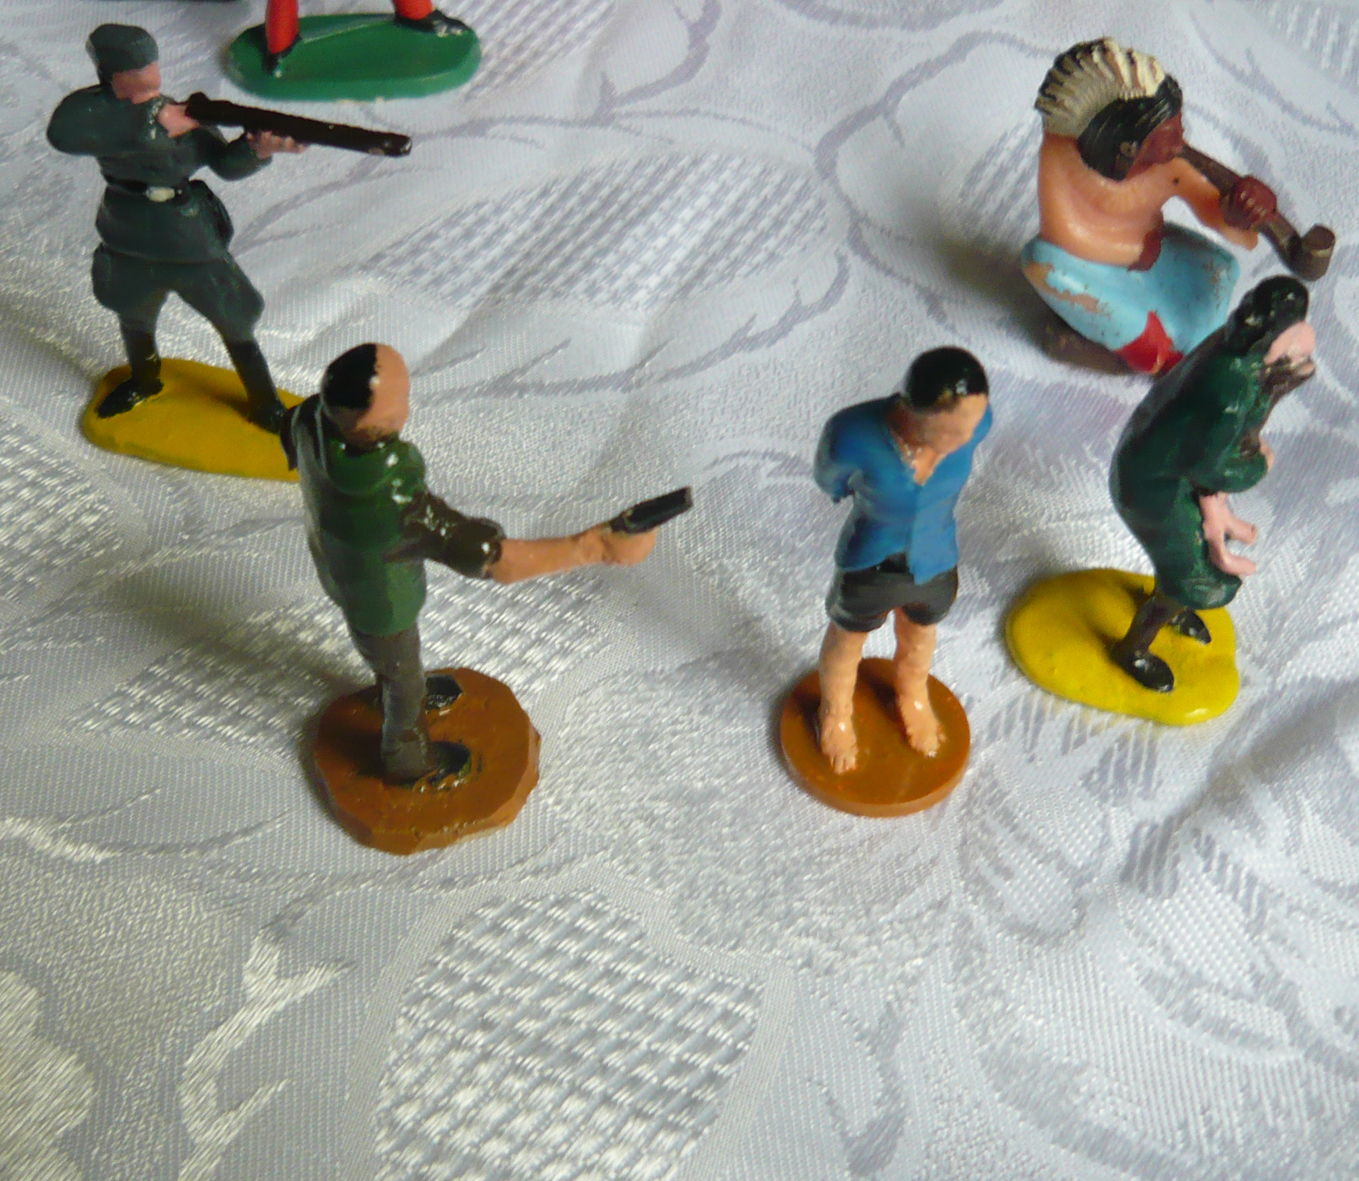 Na zdjęciu małe figurki ludzi. dwie z nich trzyma broń i kieruje w kierunku pozostałych trzech.